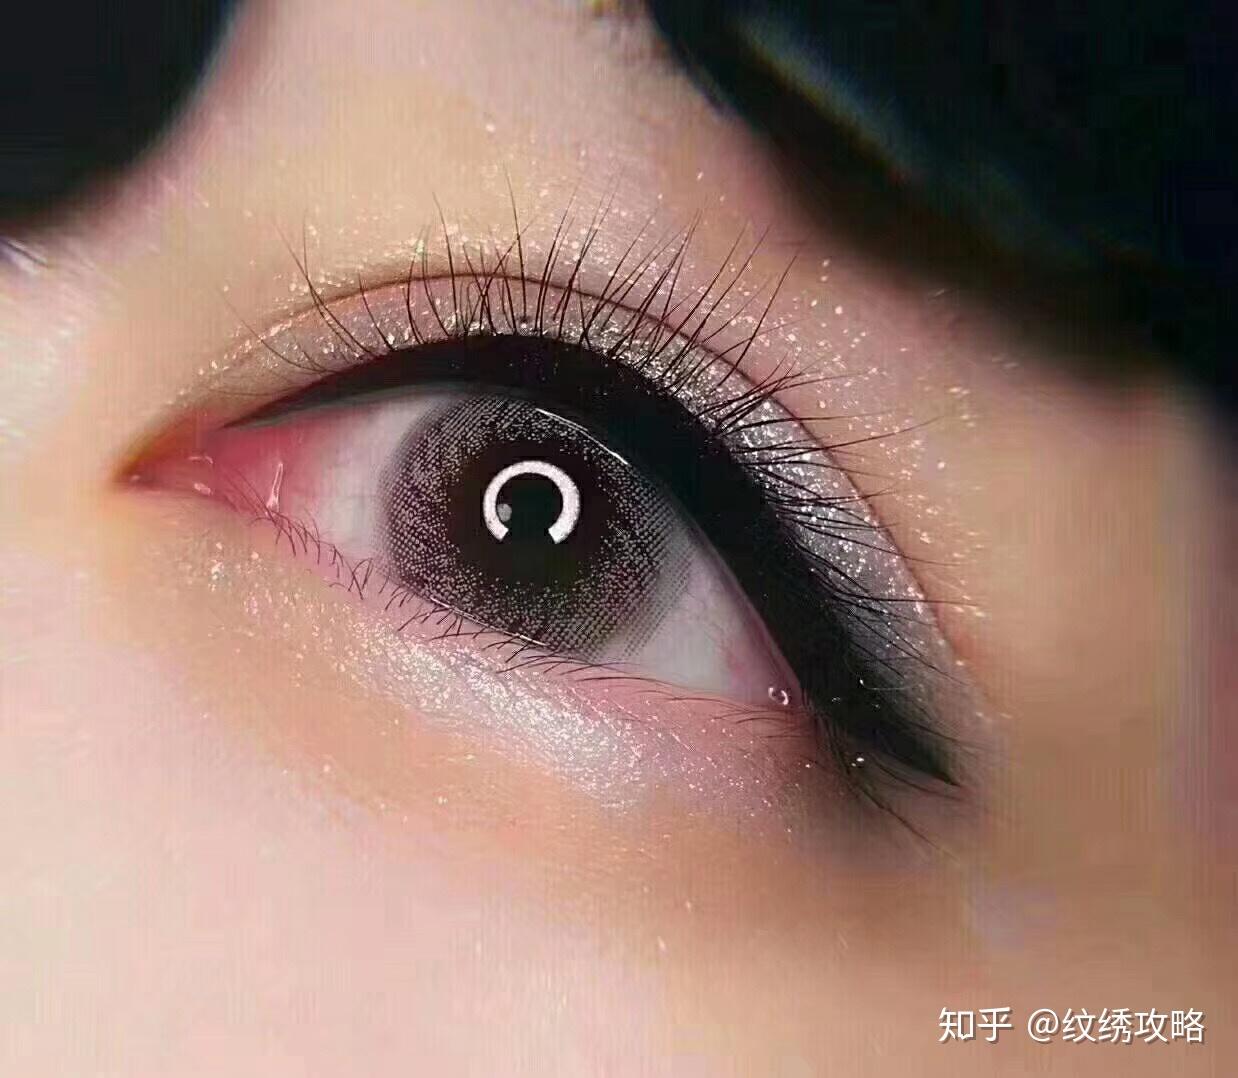 美瞳线和眼线的效果图,2021年美瞳线图片 - 伤感说说吧